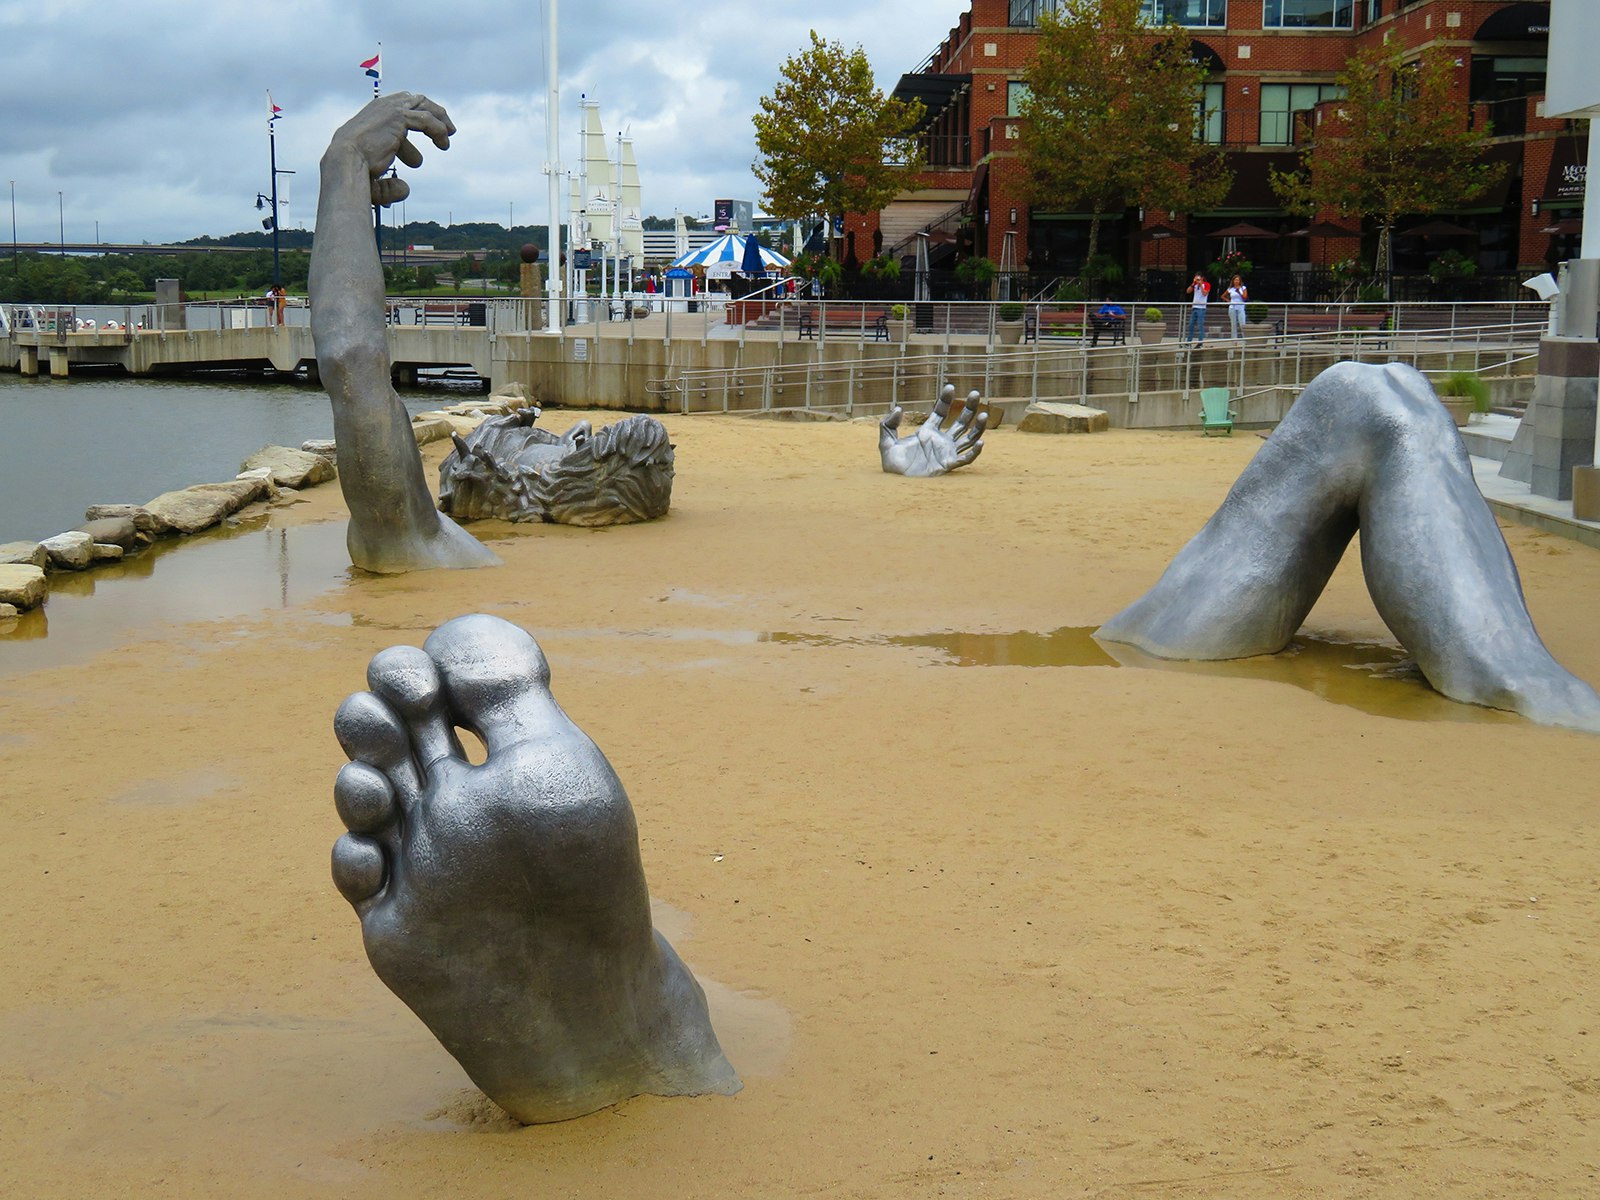 An aluminum sculpture of a man buried under the sand 